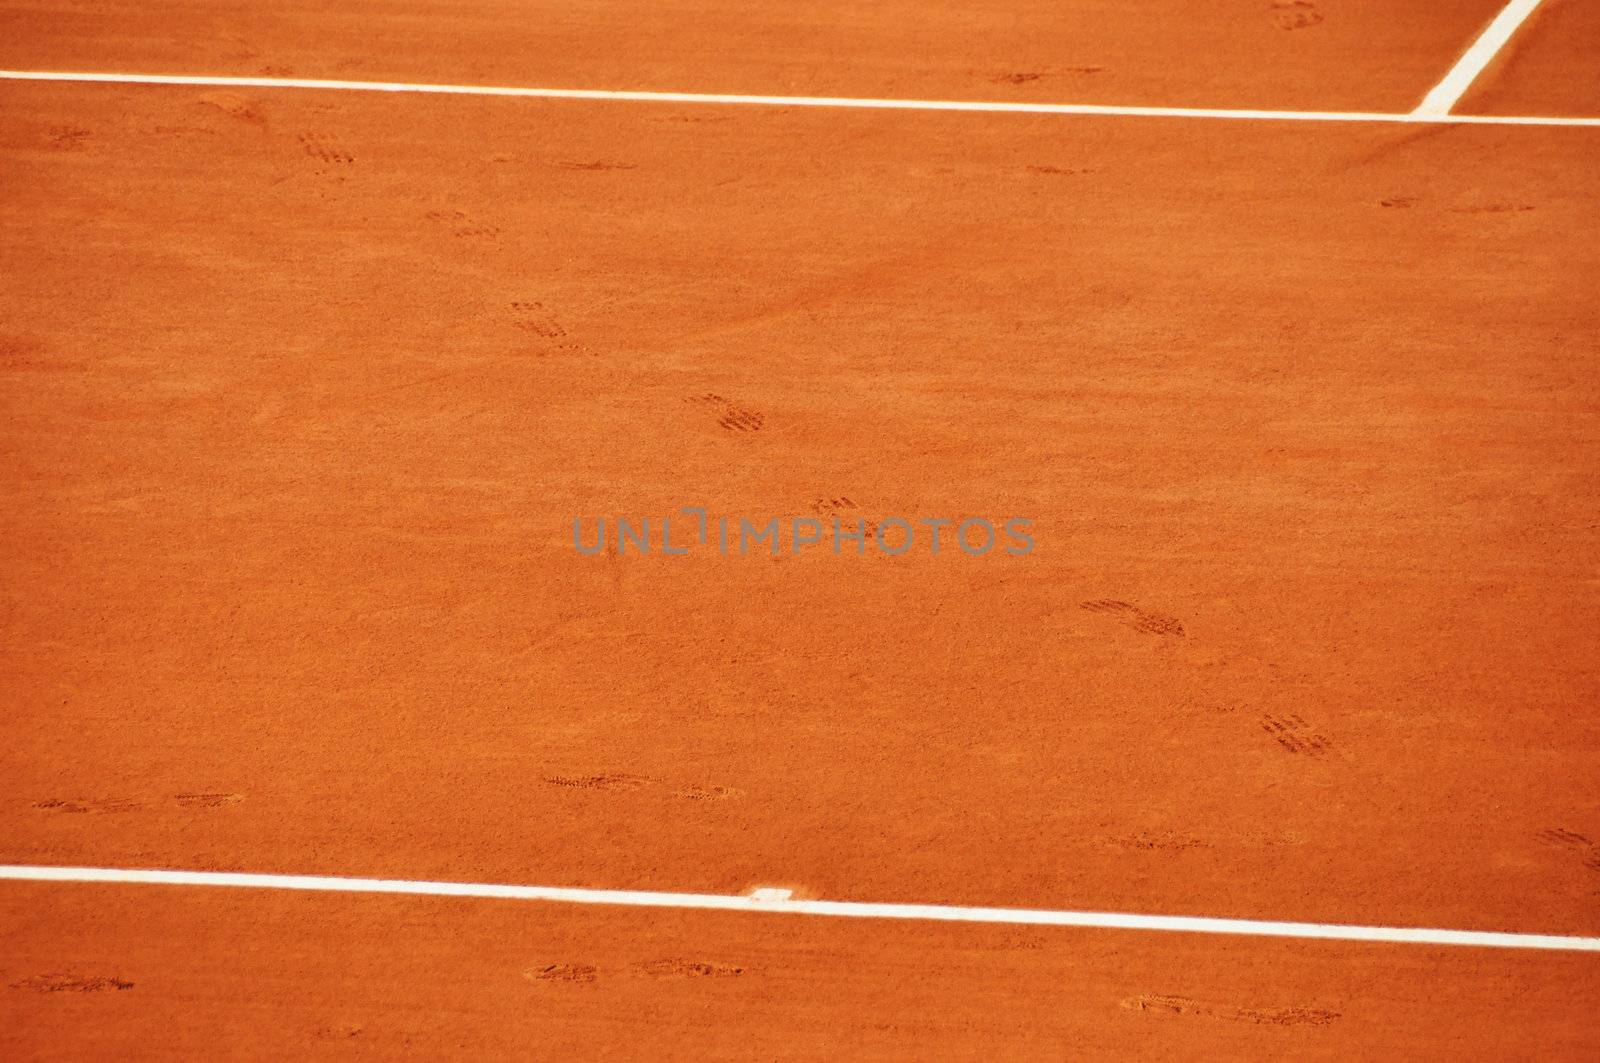 Clay tennis court by dutourdumonde